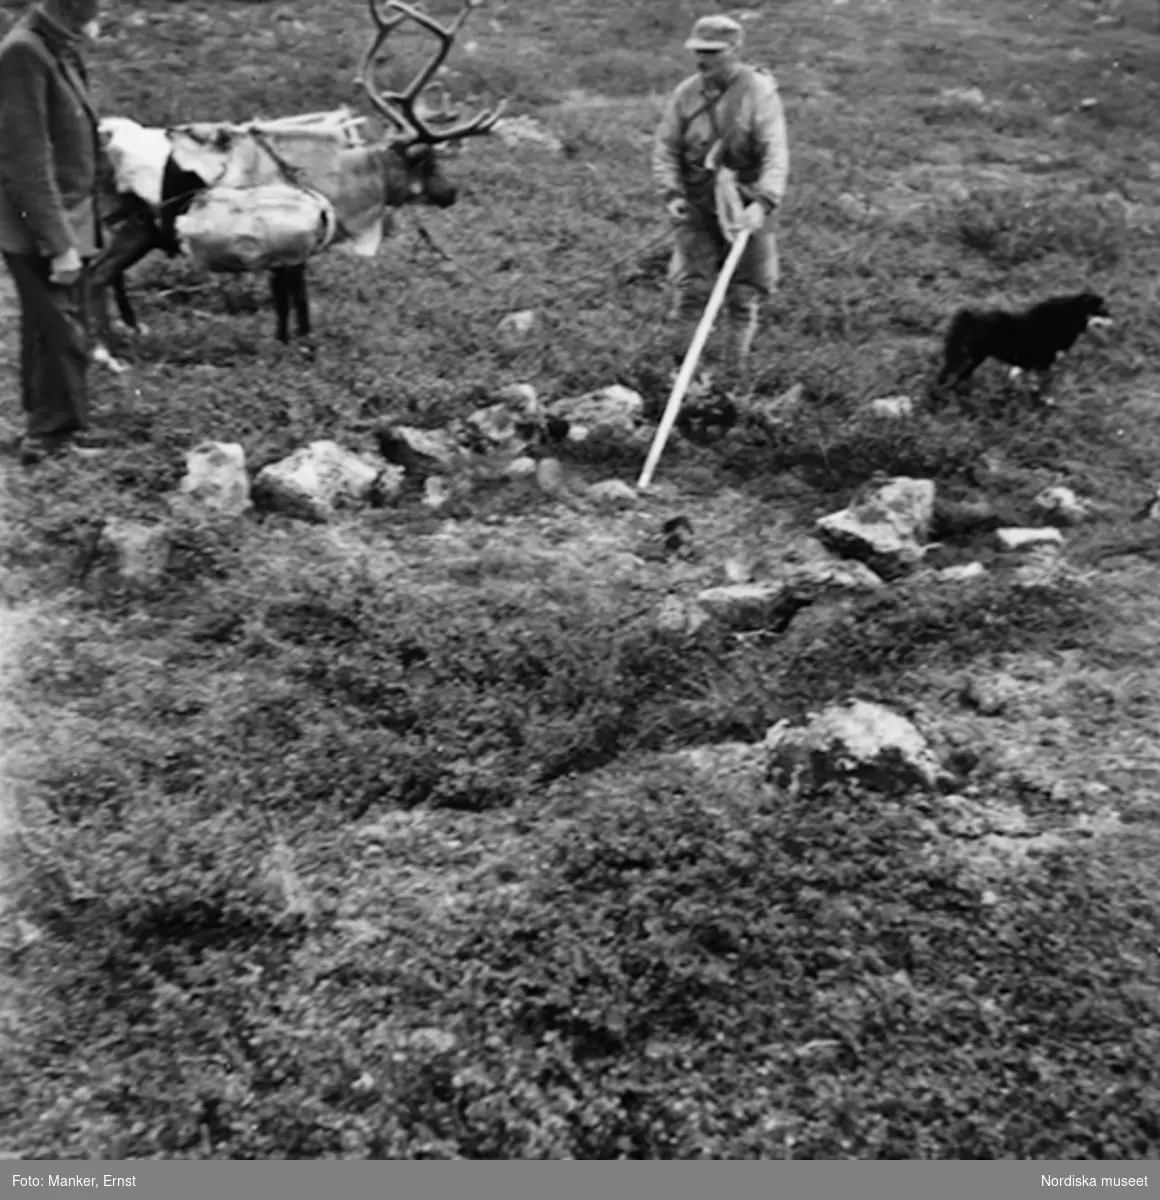 Nordiska museets lappmarksundersökning 1950. Två män, ren och hund vid stenbädd för akjaupplag på en gammal vistesplats nära nedre Rauskasjaure.